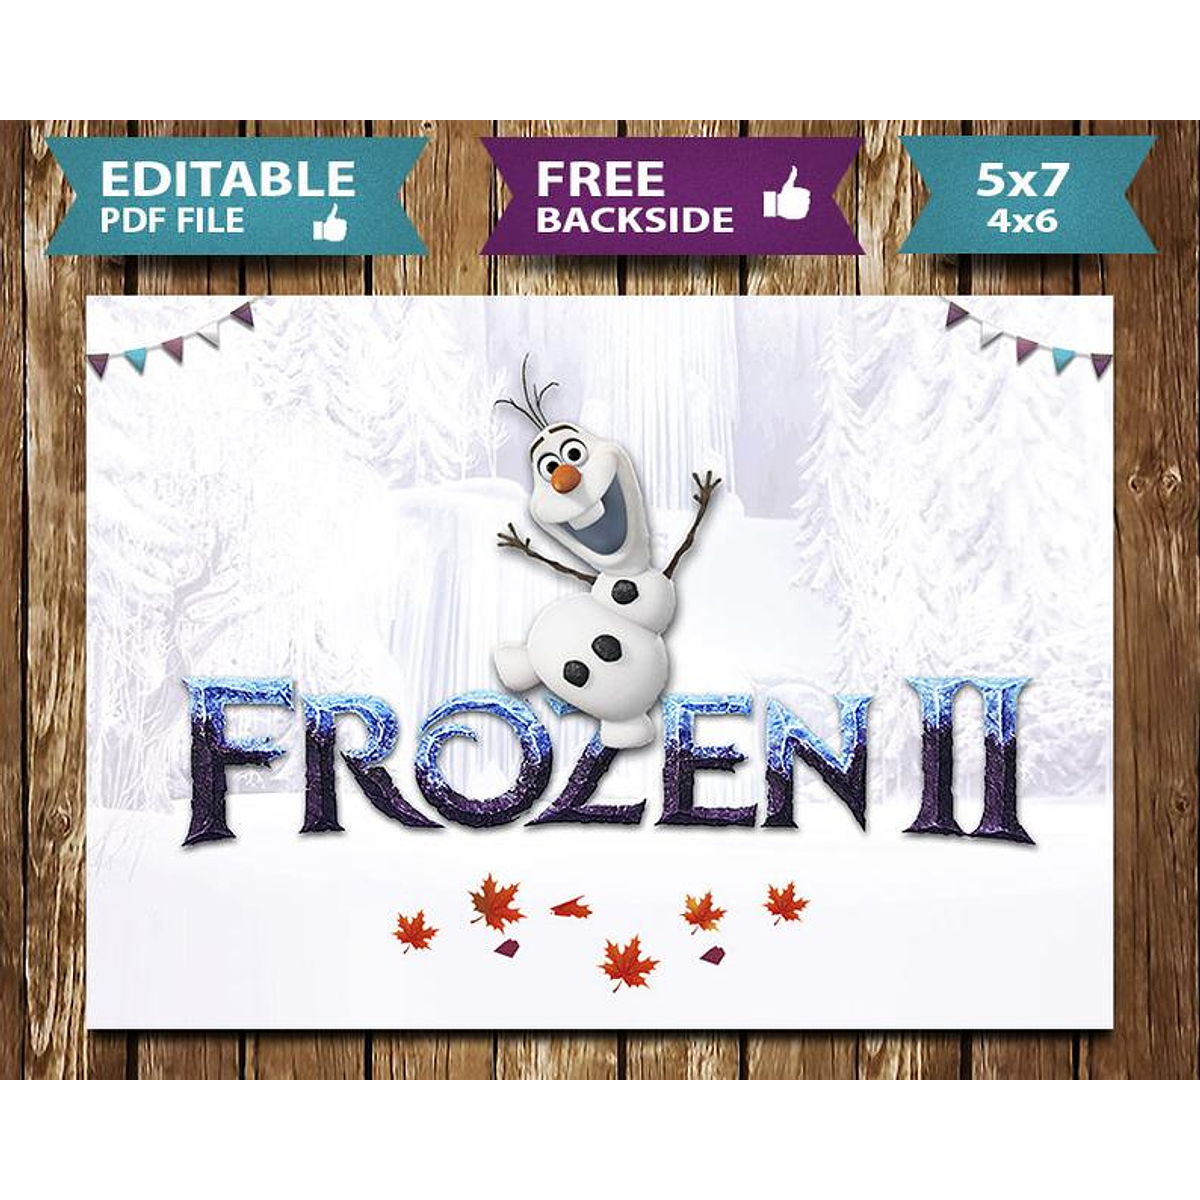 15 Convites de aniversário Frozen 2 para editar grátis (WhatsApp e Imprimir)